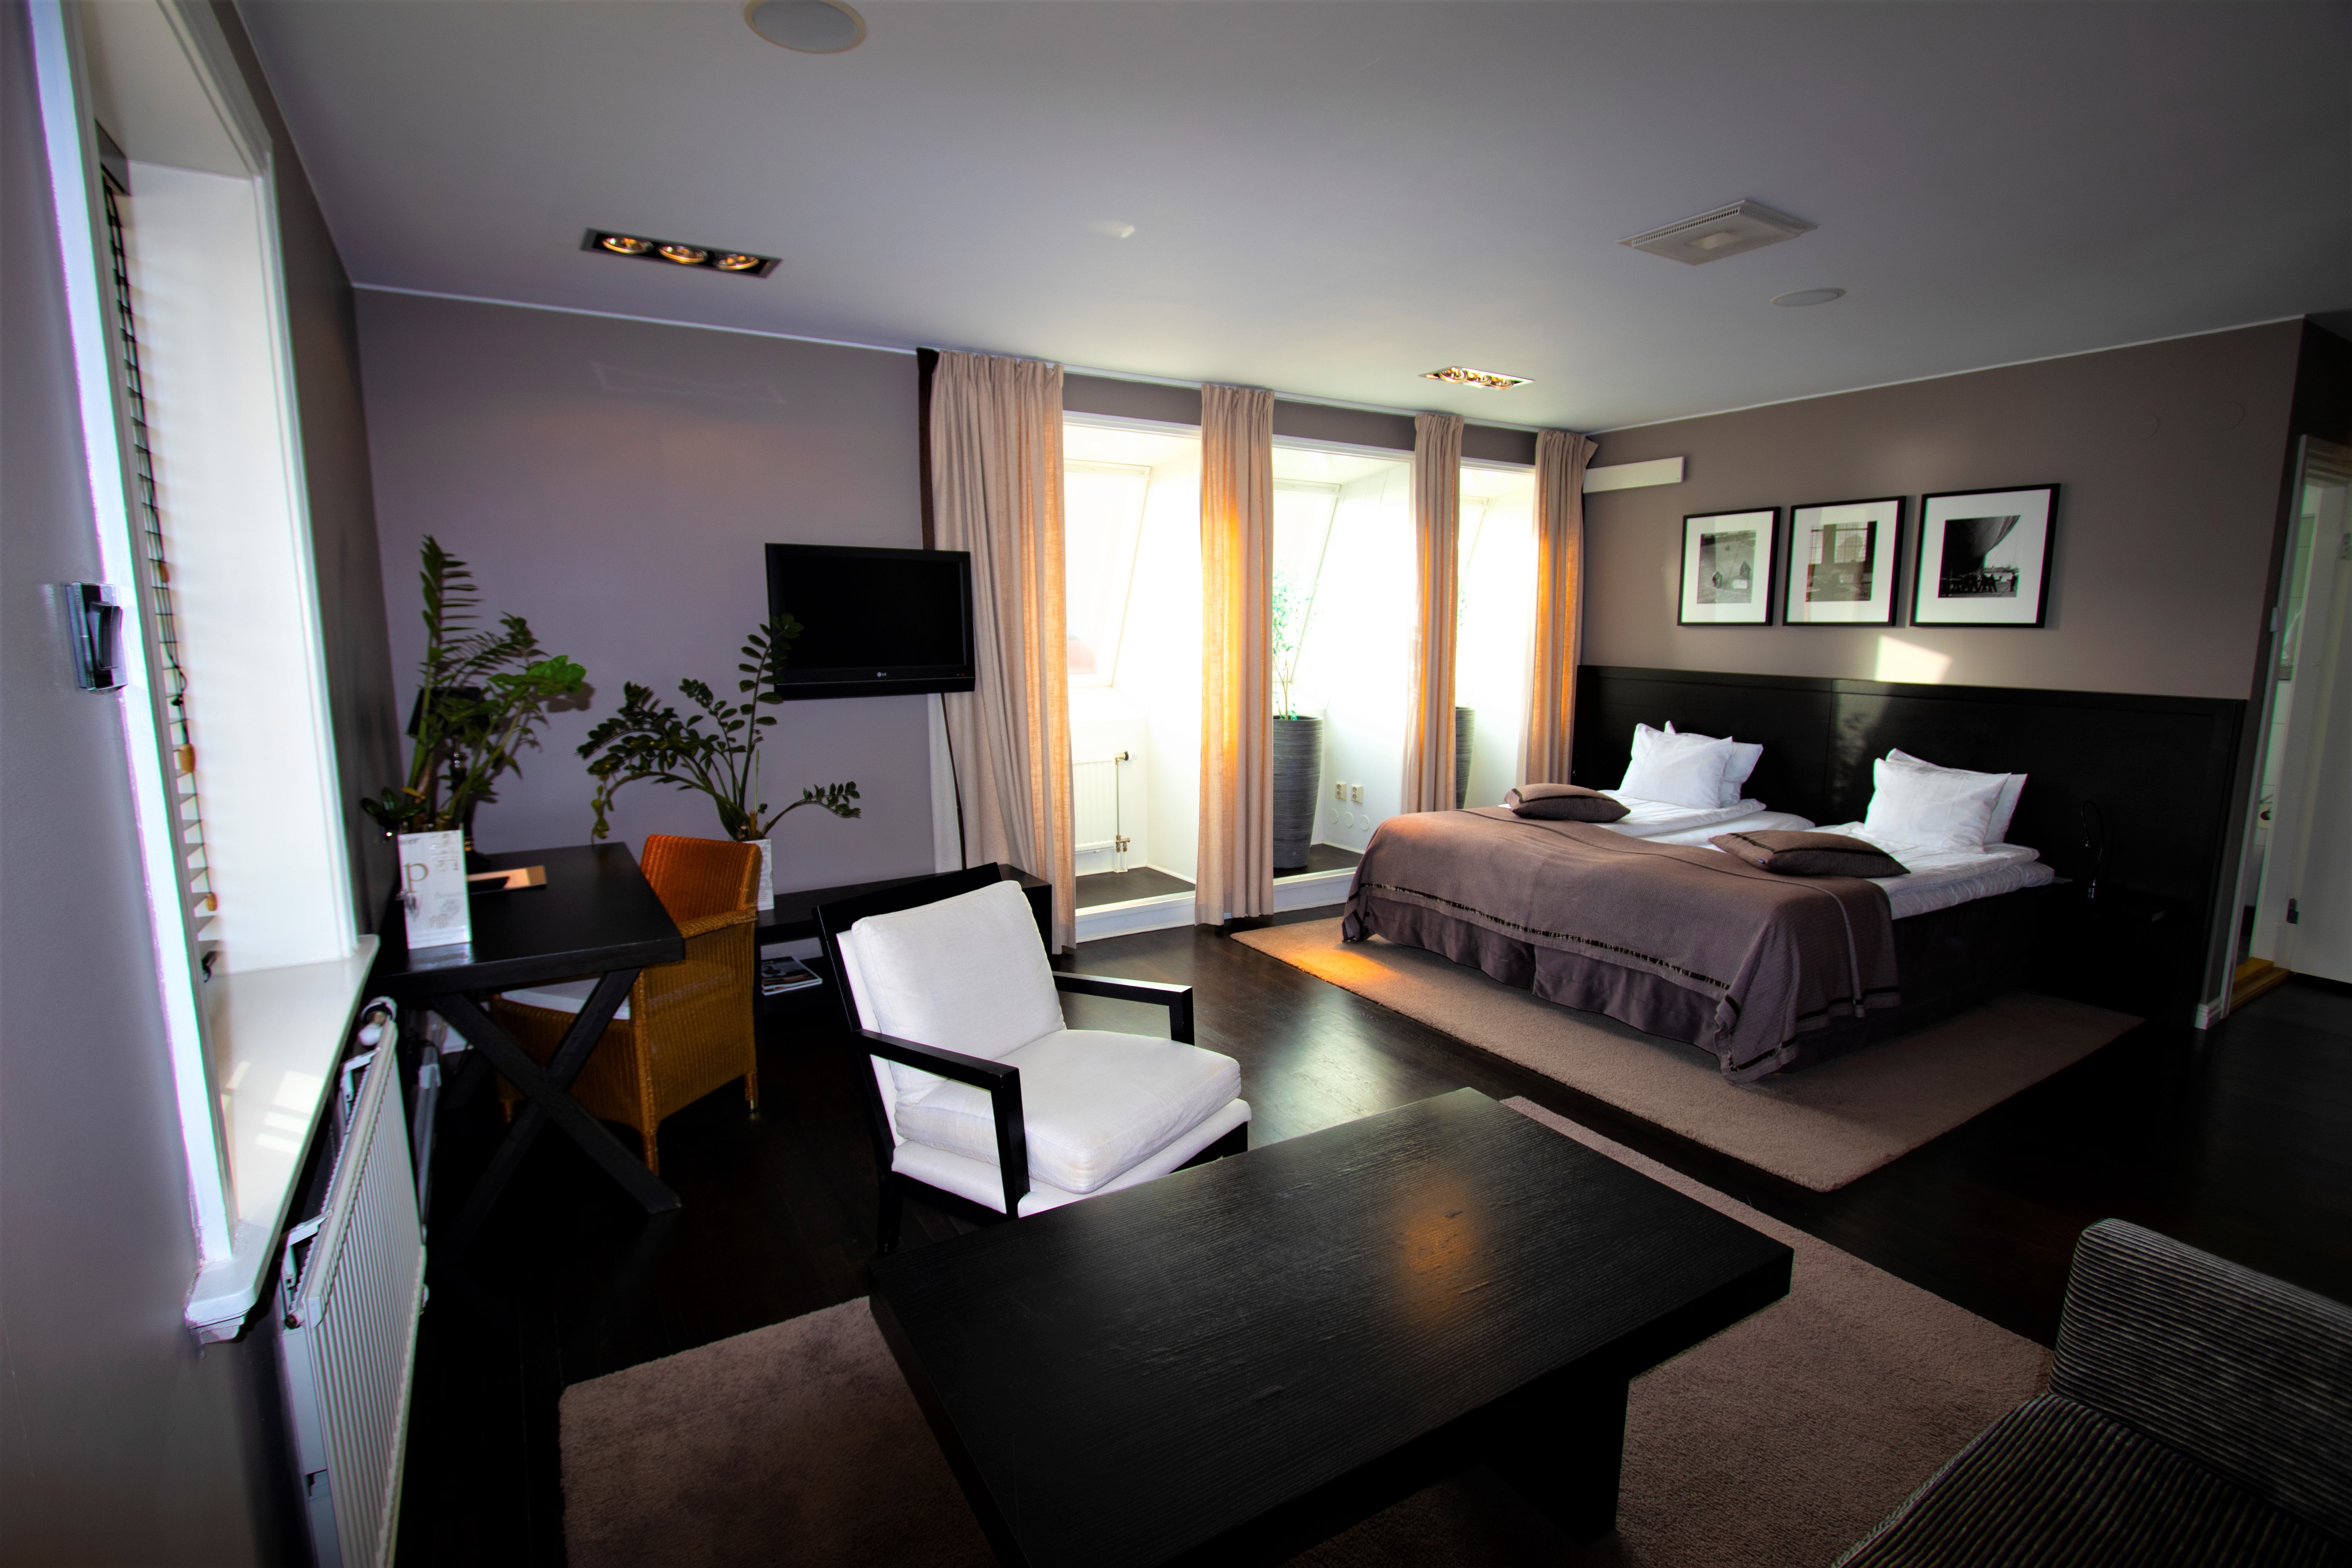 Hotell Villan <br/>83.92 ew <br/> <a href='http://vakantieoplossing.nl/outpage/?id=d8a5f462d9955d7f857d4bcc371a4236' target='_blank'>View Details</a>